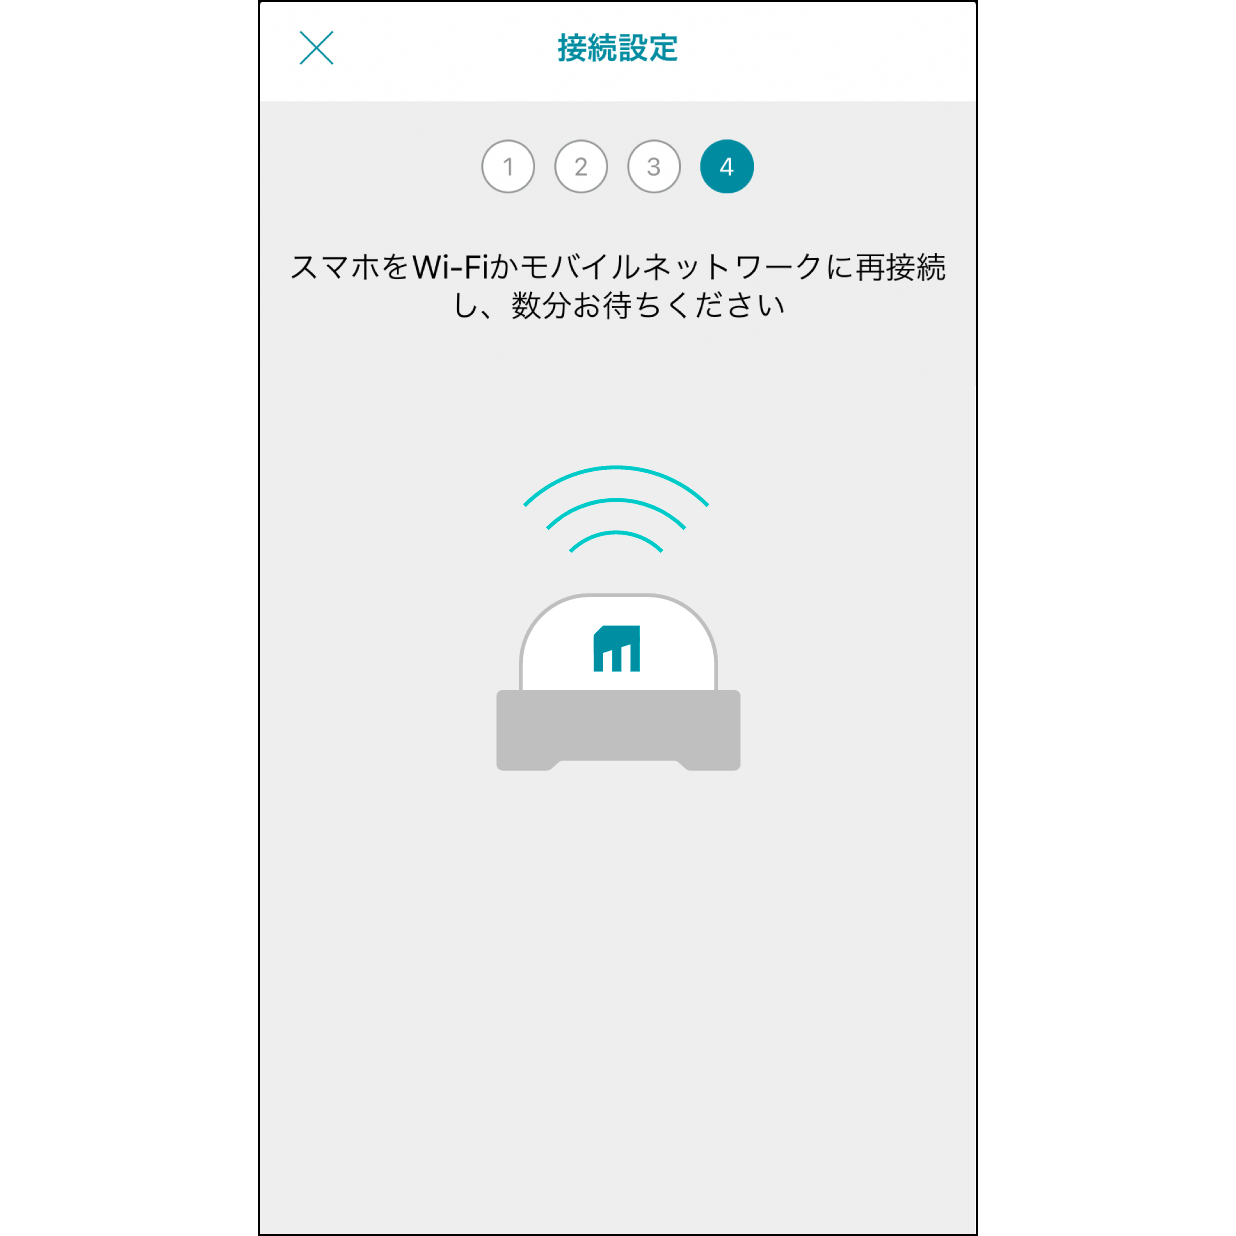 8. Muro BoxにWi-Fiを接続30秒ほどでWi-Fiに接続します。